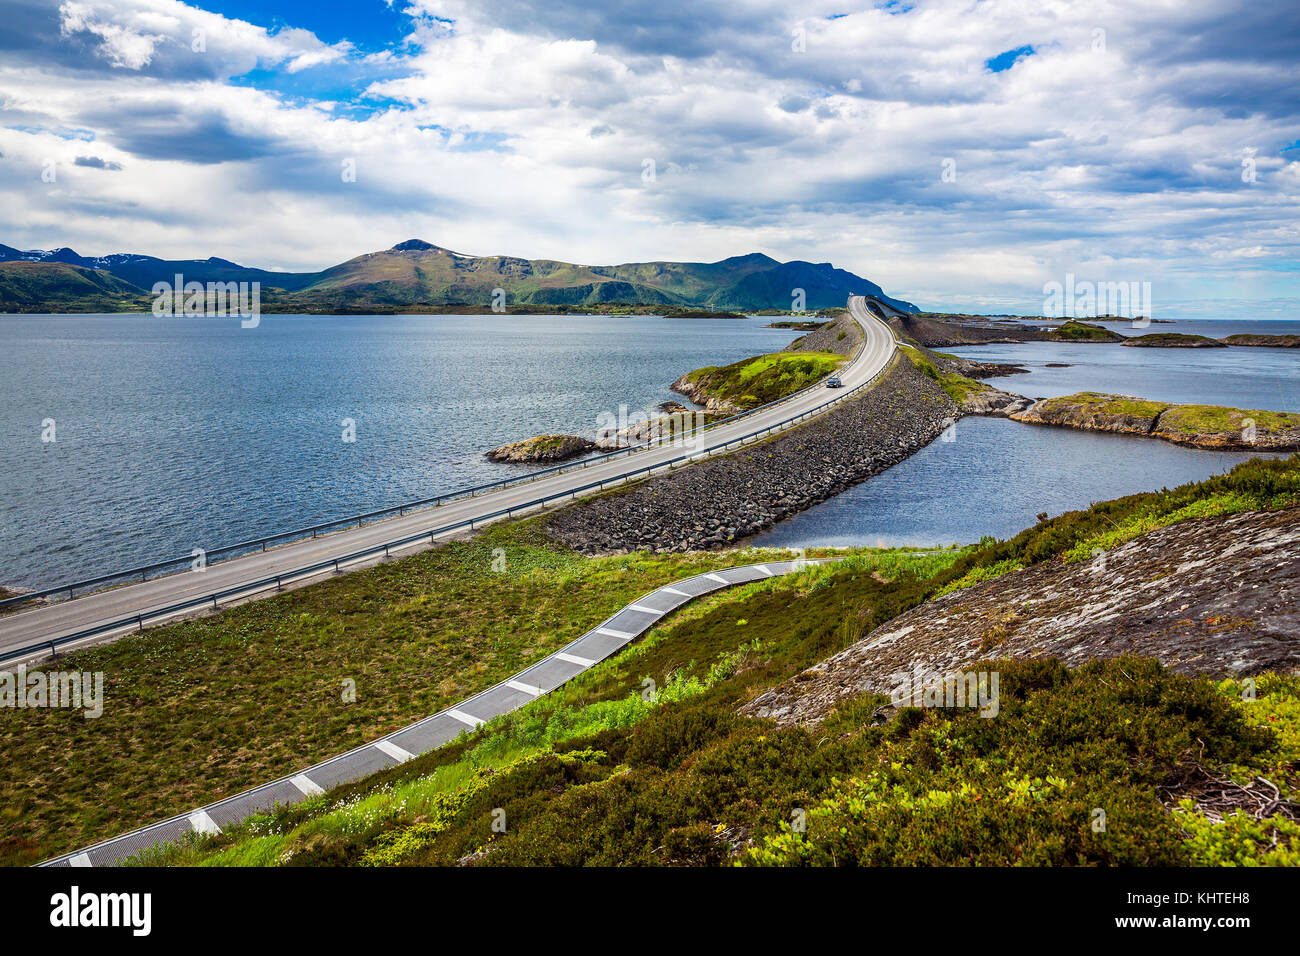 Norwegen Atlantik Straße oder den Atlantik Straße (atlanterhavsveien) den Titel als "norwegischen Bau des Jahrhunderts" ausgezeichnet worden. Die Straße klassi Stockfoto